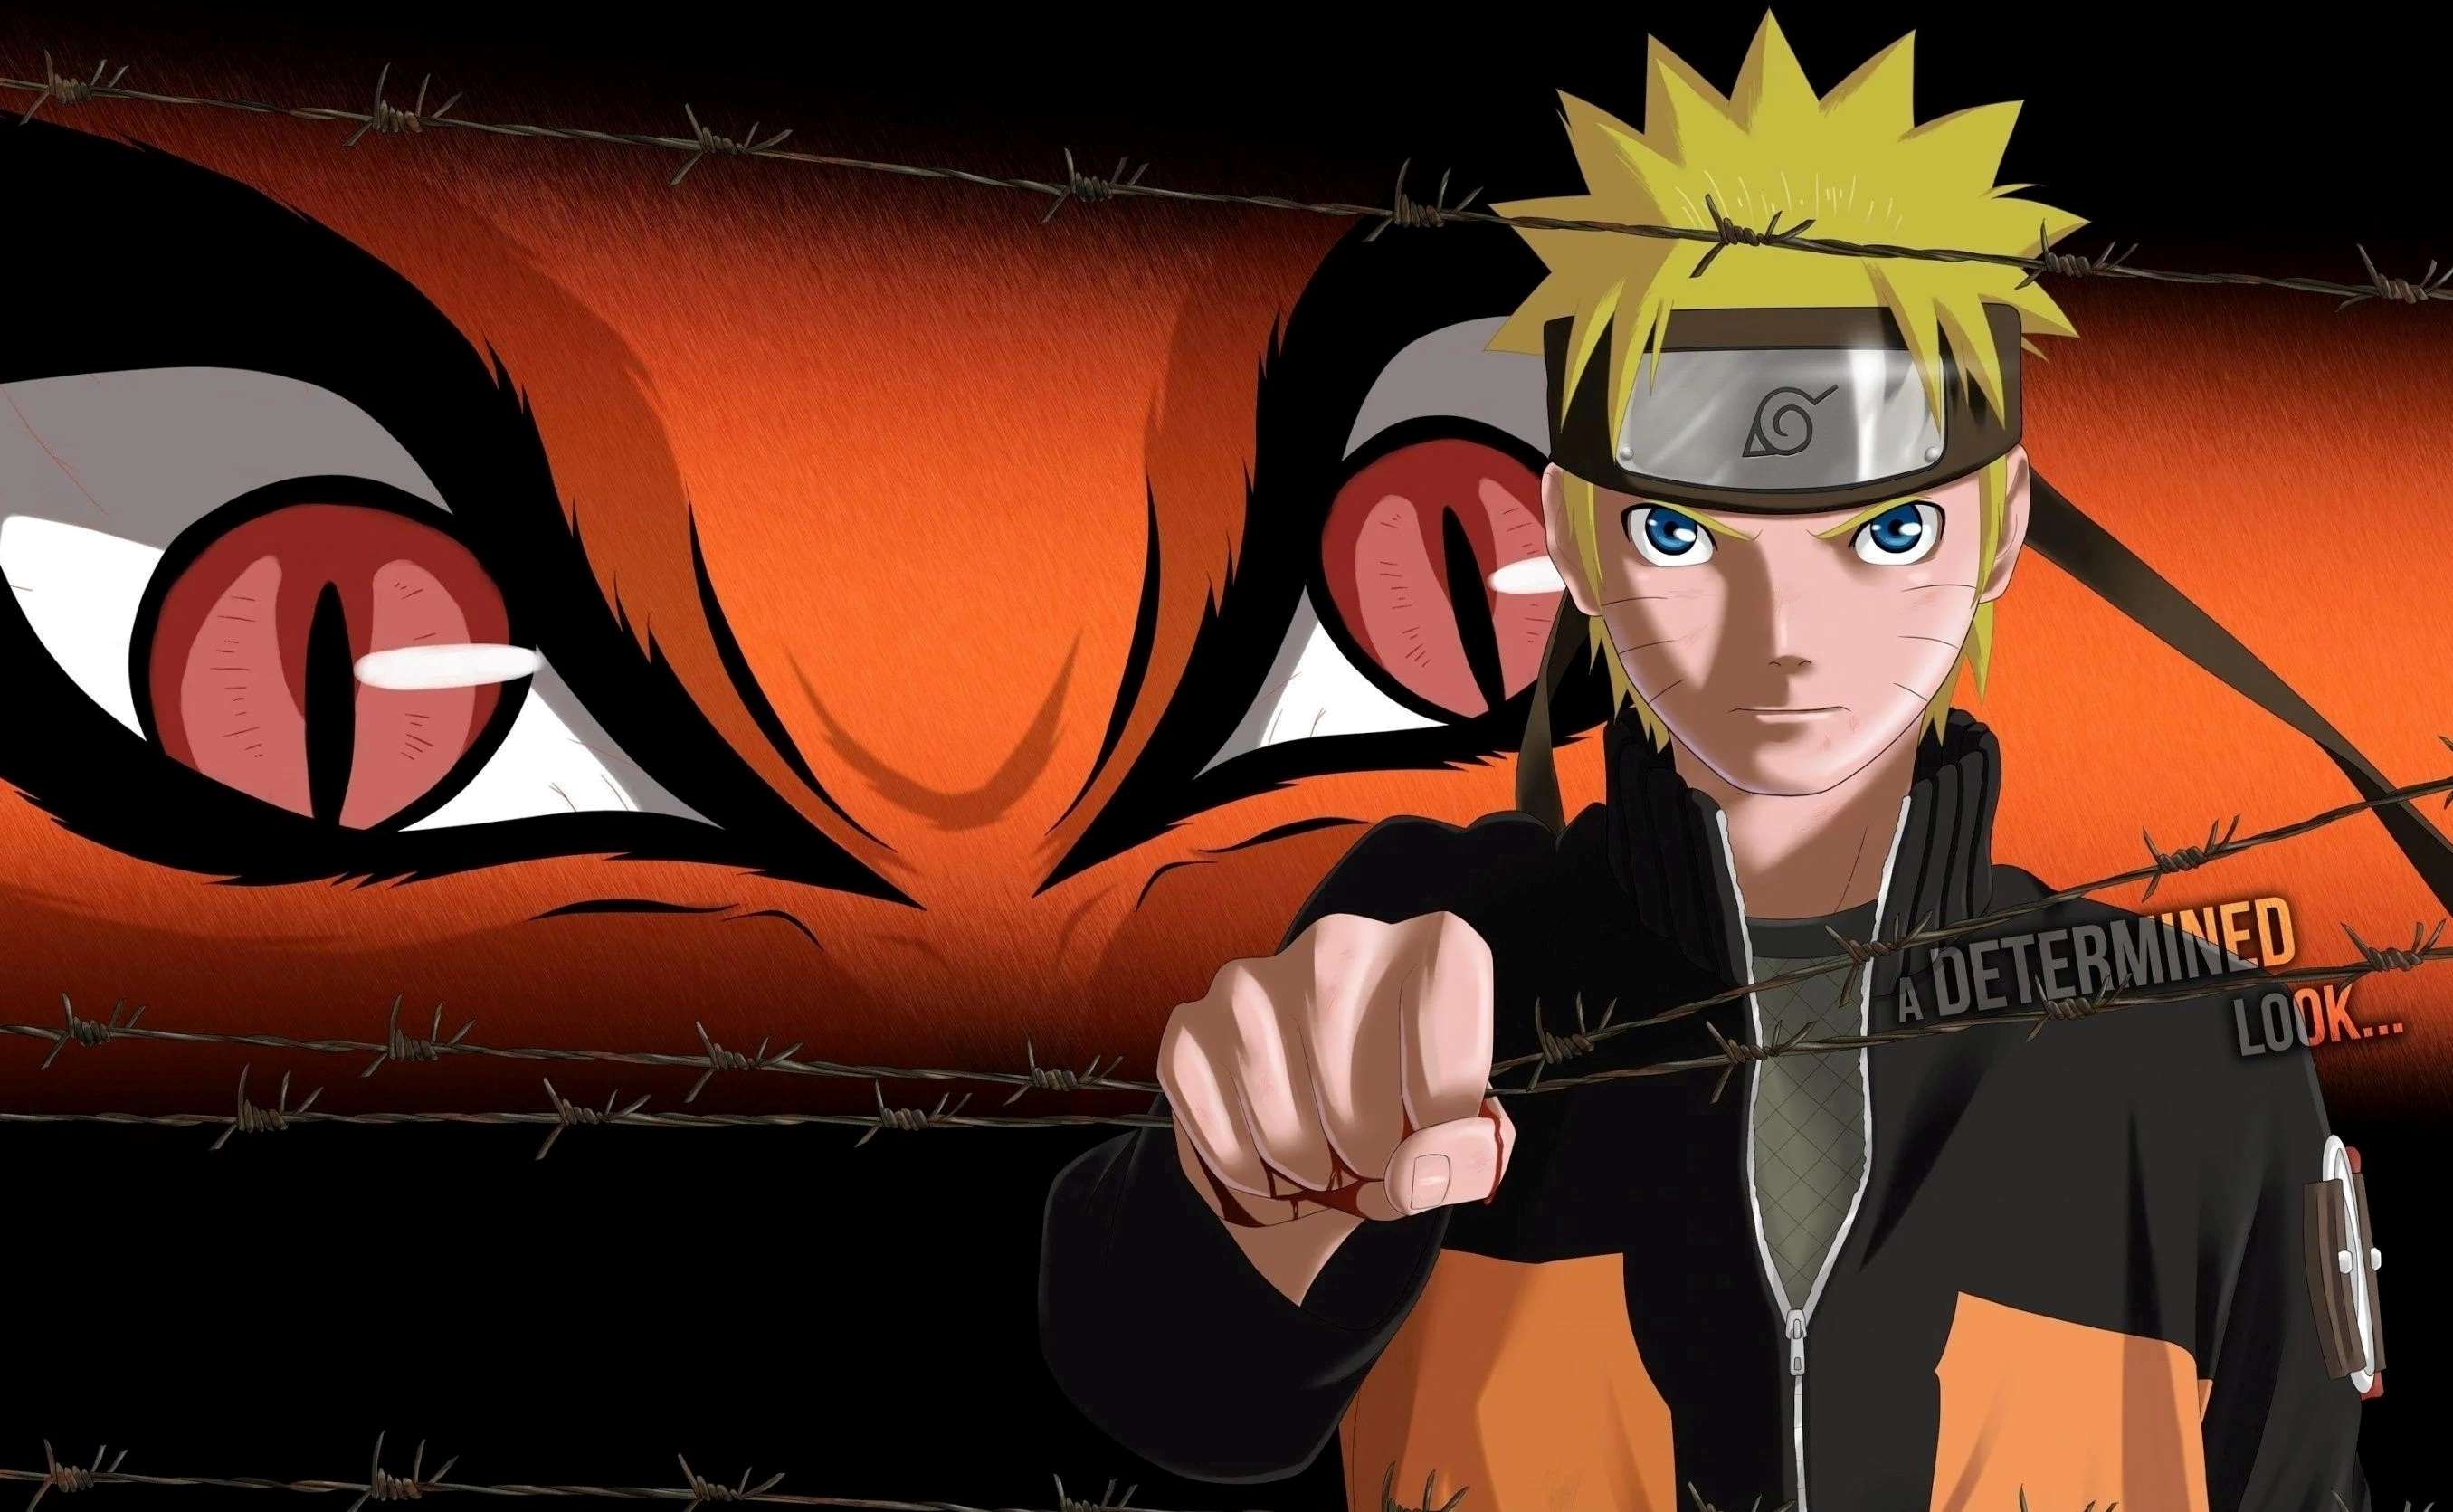 Naruto Uzumaki - Naruto,Anime  Naruto uzumaki, Naruto, Naruto